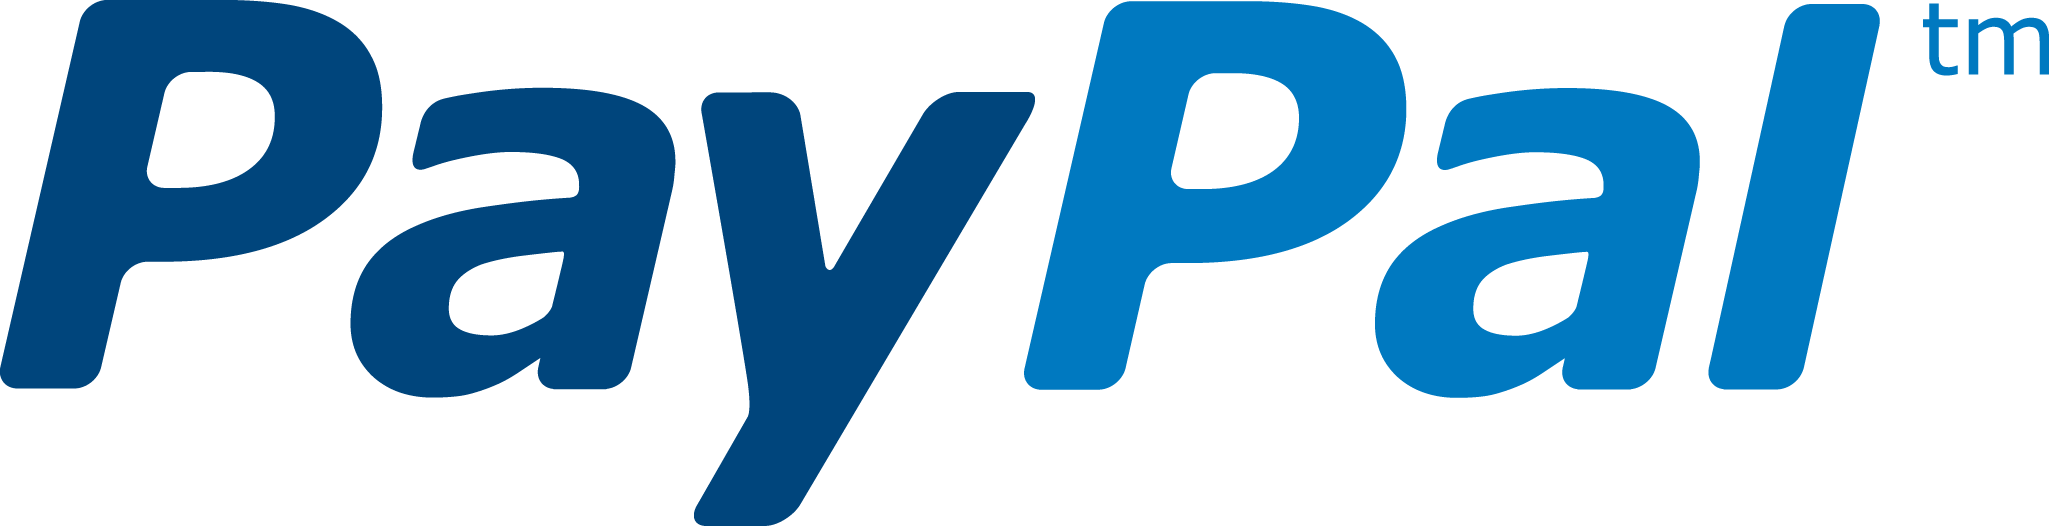 Paypal logo on website - sbookbatman